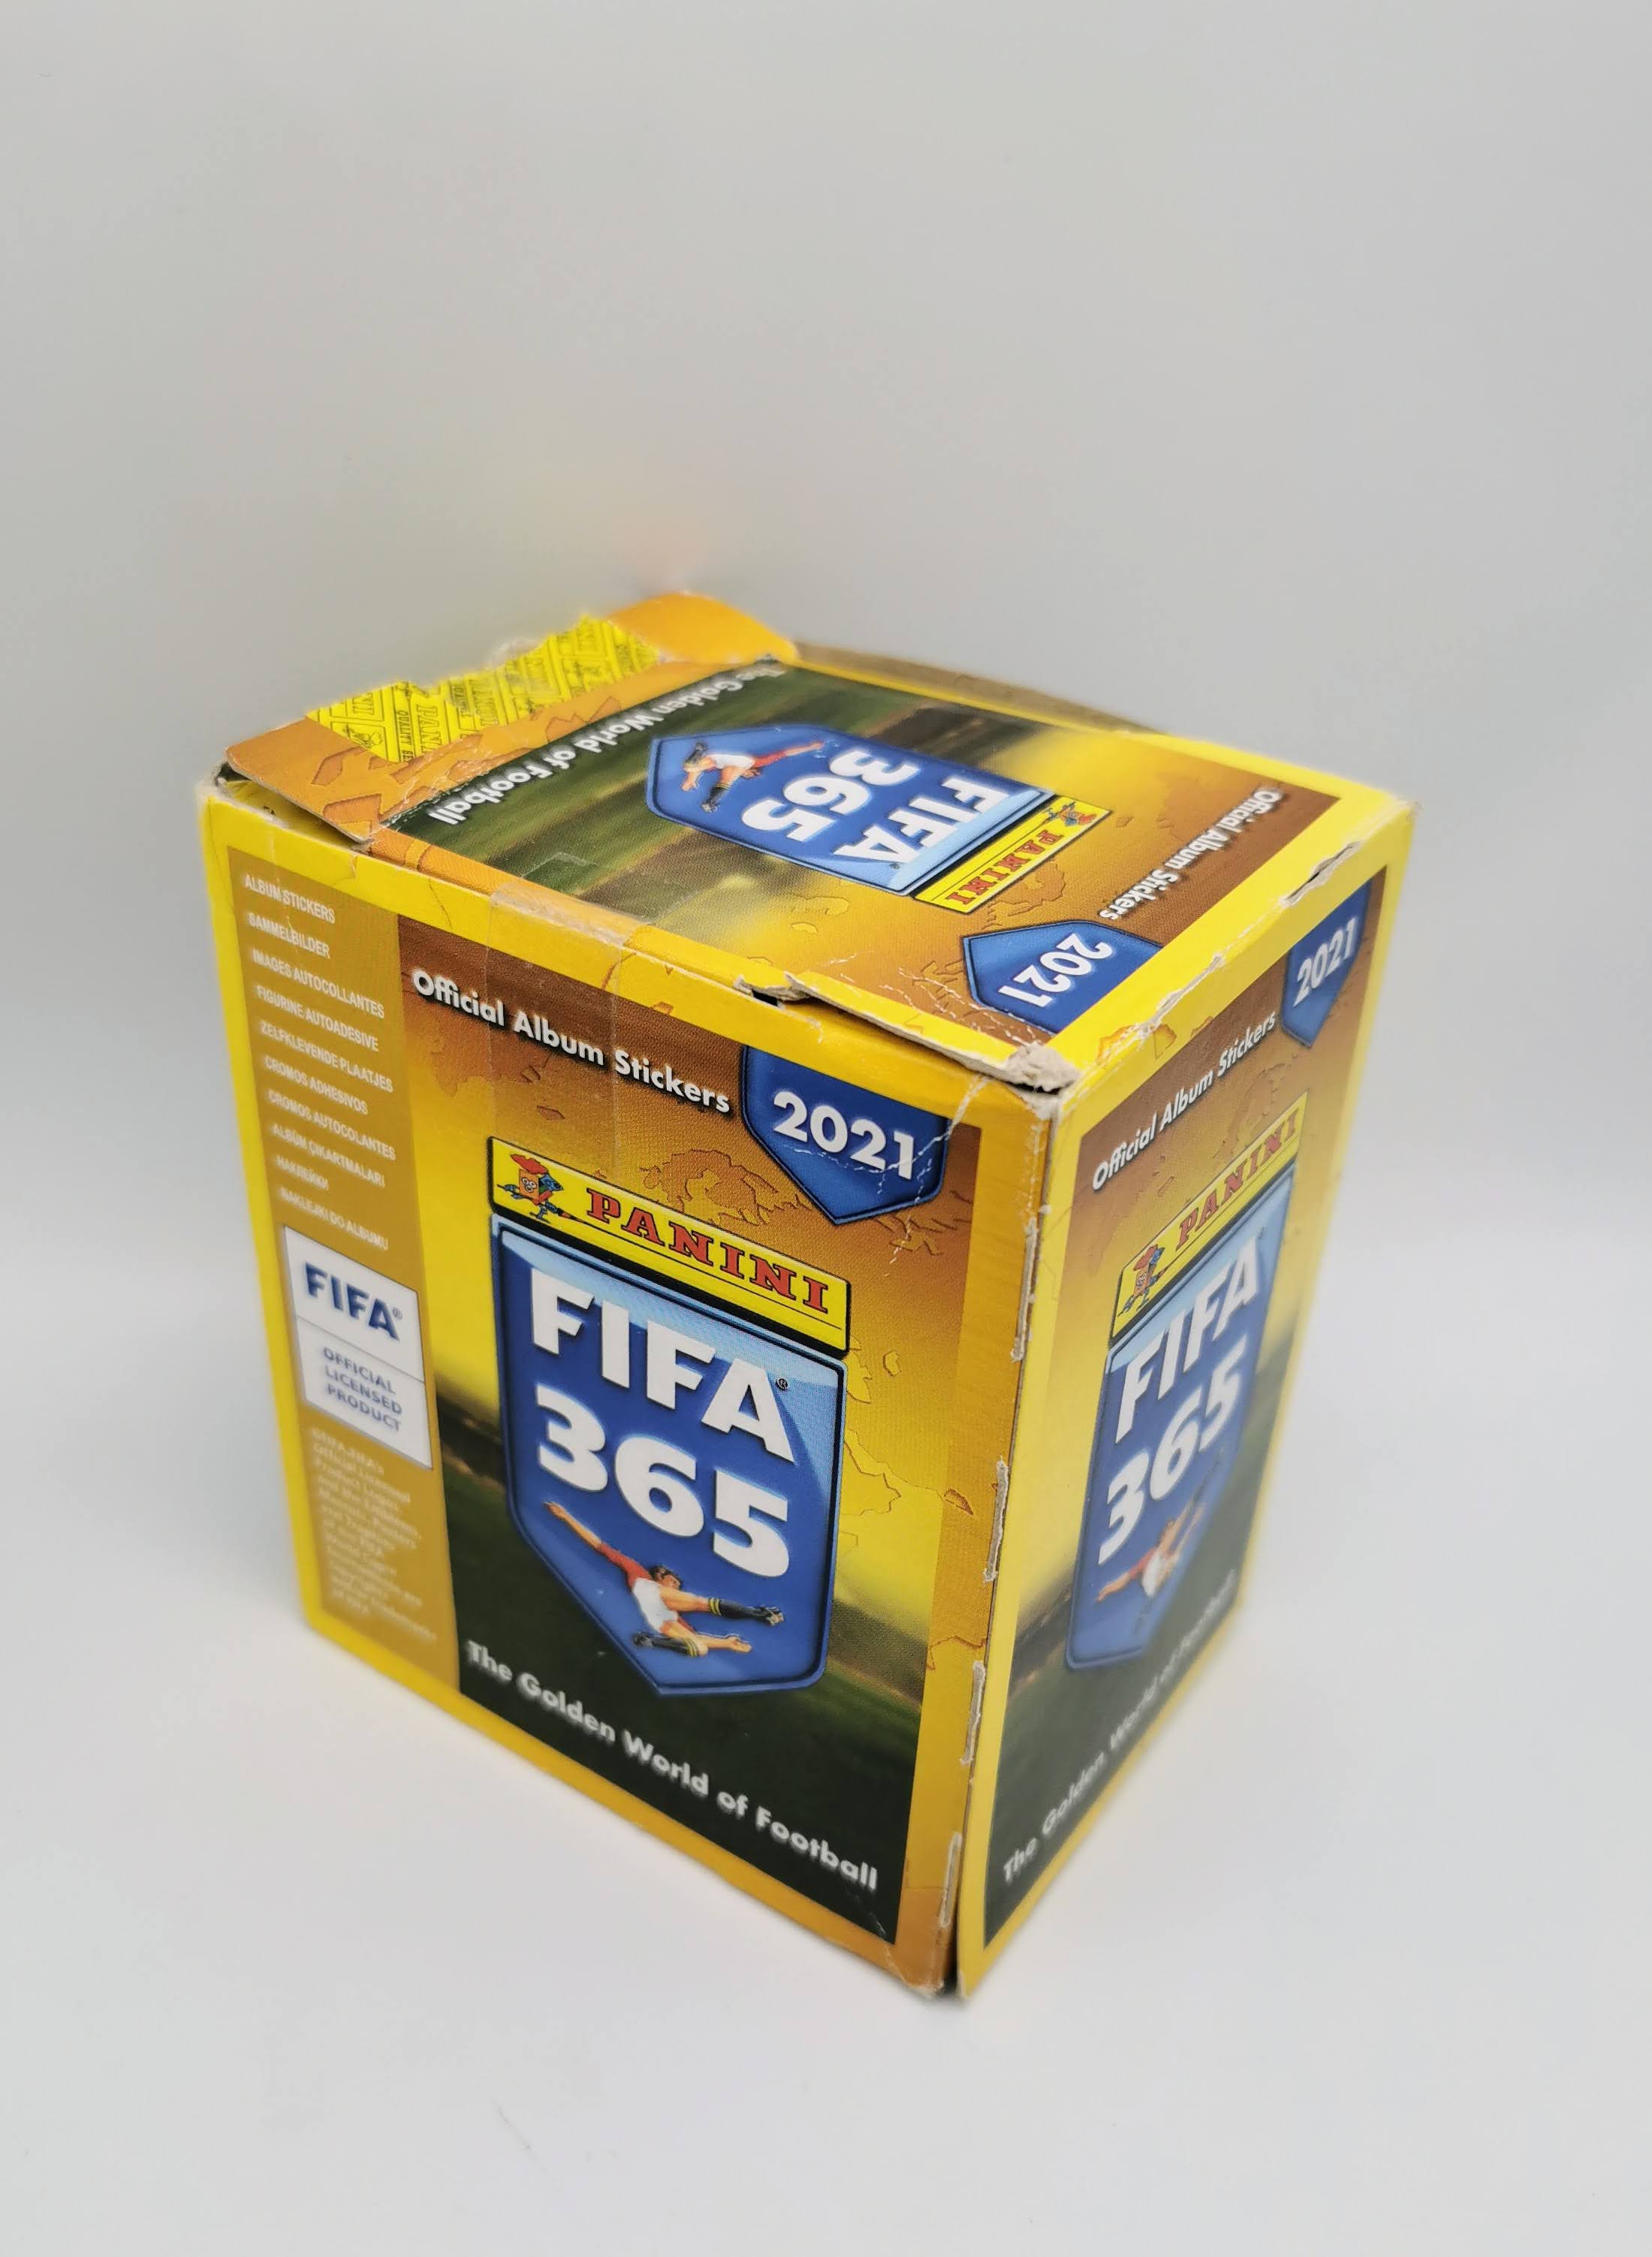 Fifa 365 2021 Box 50 bustine figurine album Panini calciatori vers edicola  - manuelkant